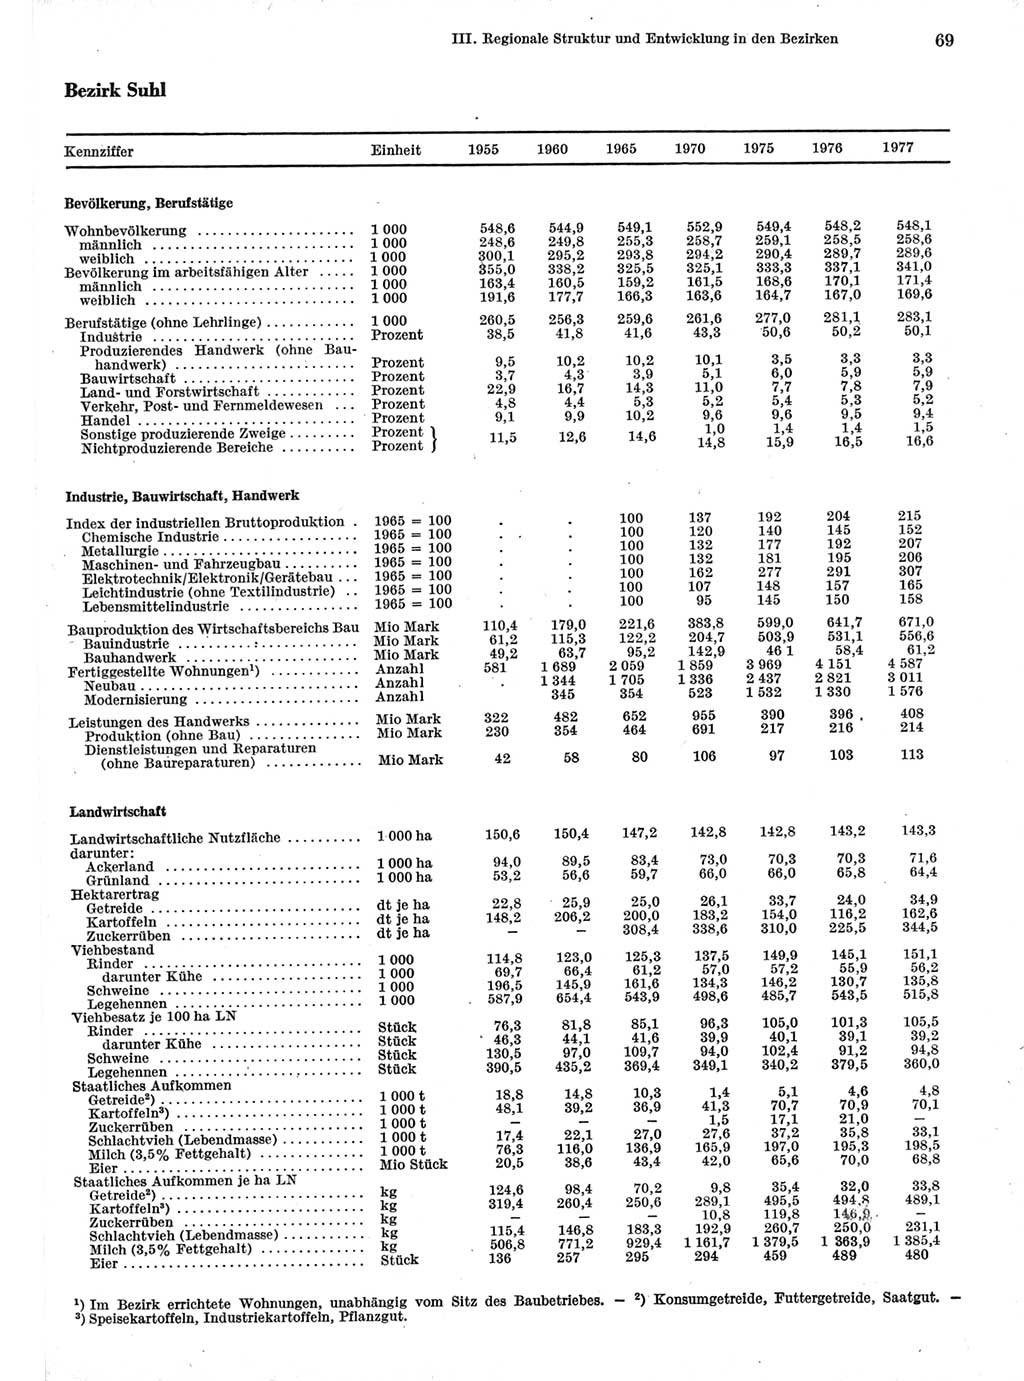 Statistisches Jahrbuch der Deutschen Demokratischen Republik (DDR) 1978, Seite 69 (Stat. Jb. DDR 1978, S. 69)